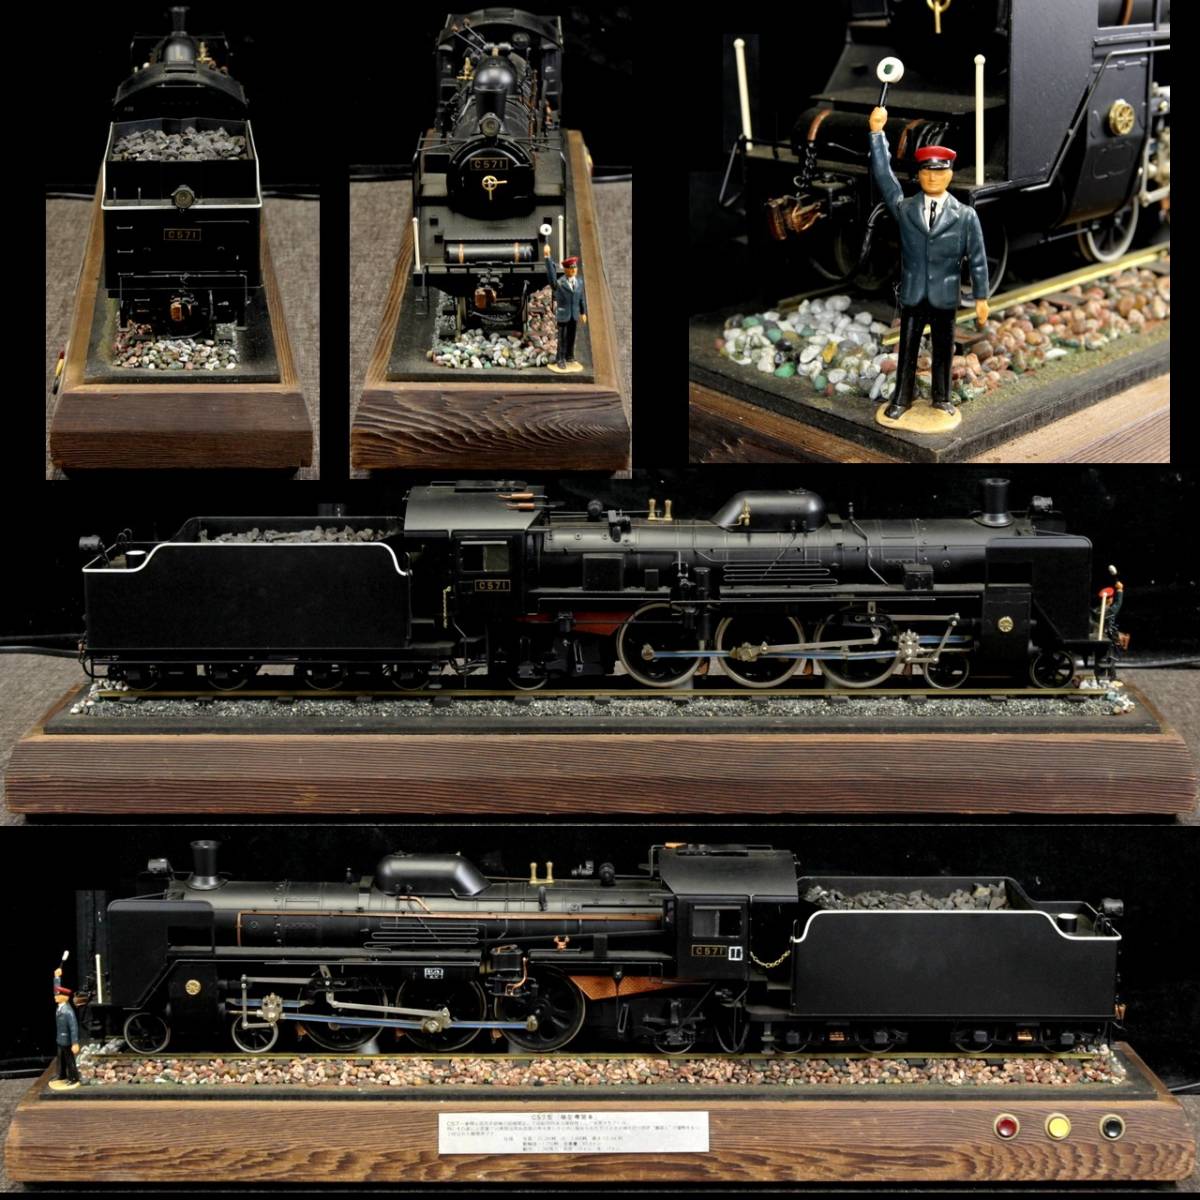 。◆楾◆ 珍品 鉄道展示作品 C57型 可動式 精密 機関車 汽笛 ガラスケース付 鉄道模型 [V352]QV/21.6廻/GK/(200)